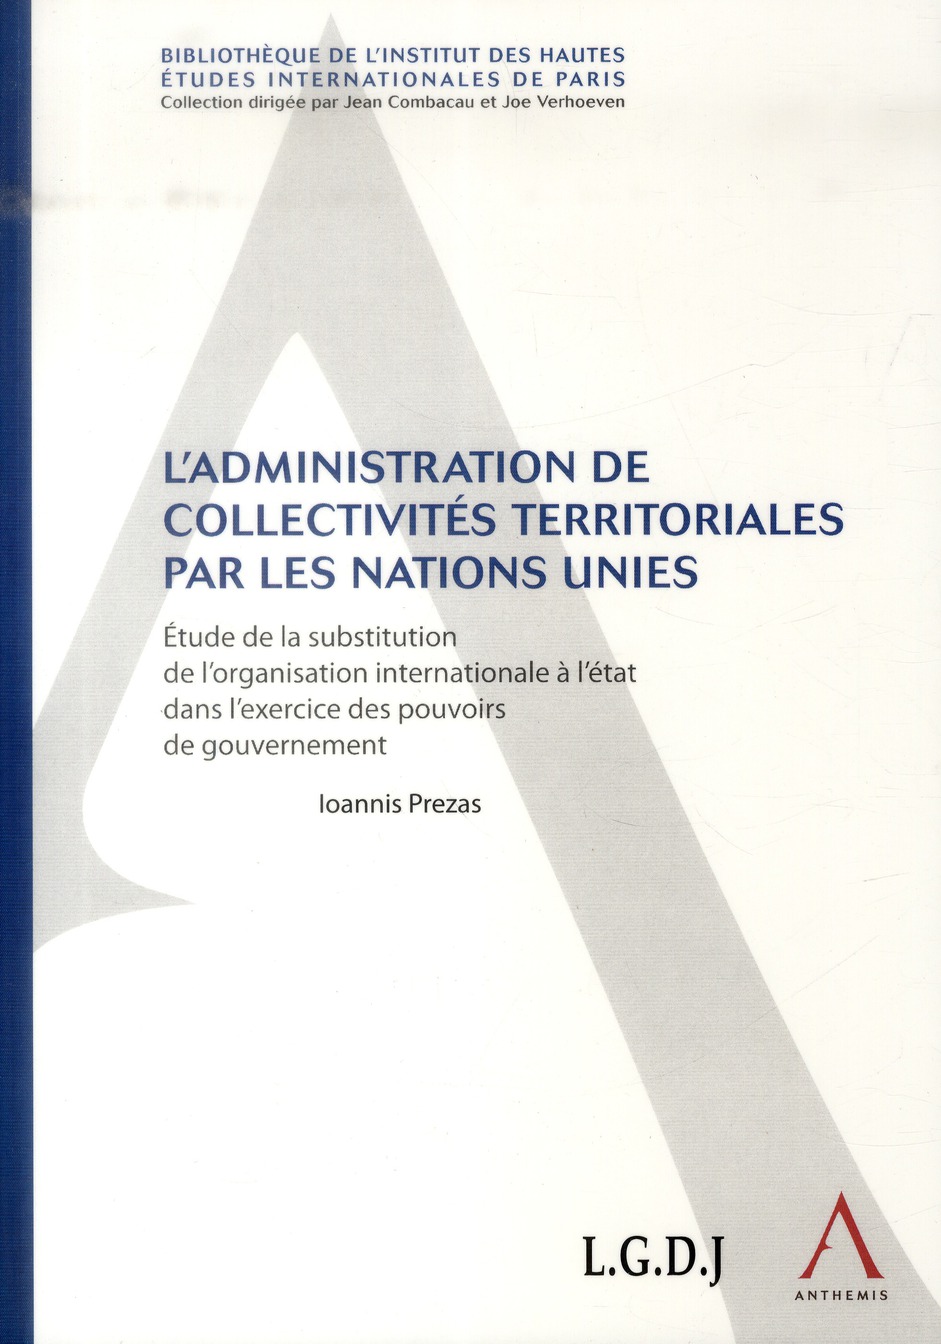 L'ADMINISTRATION DE COLLECTIVITES TERRITORIALES PAR LES NATIONS UNIES